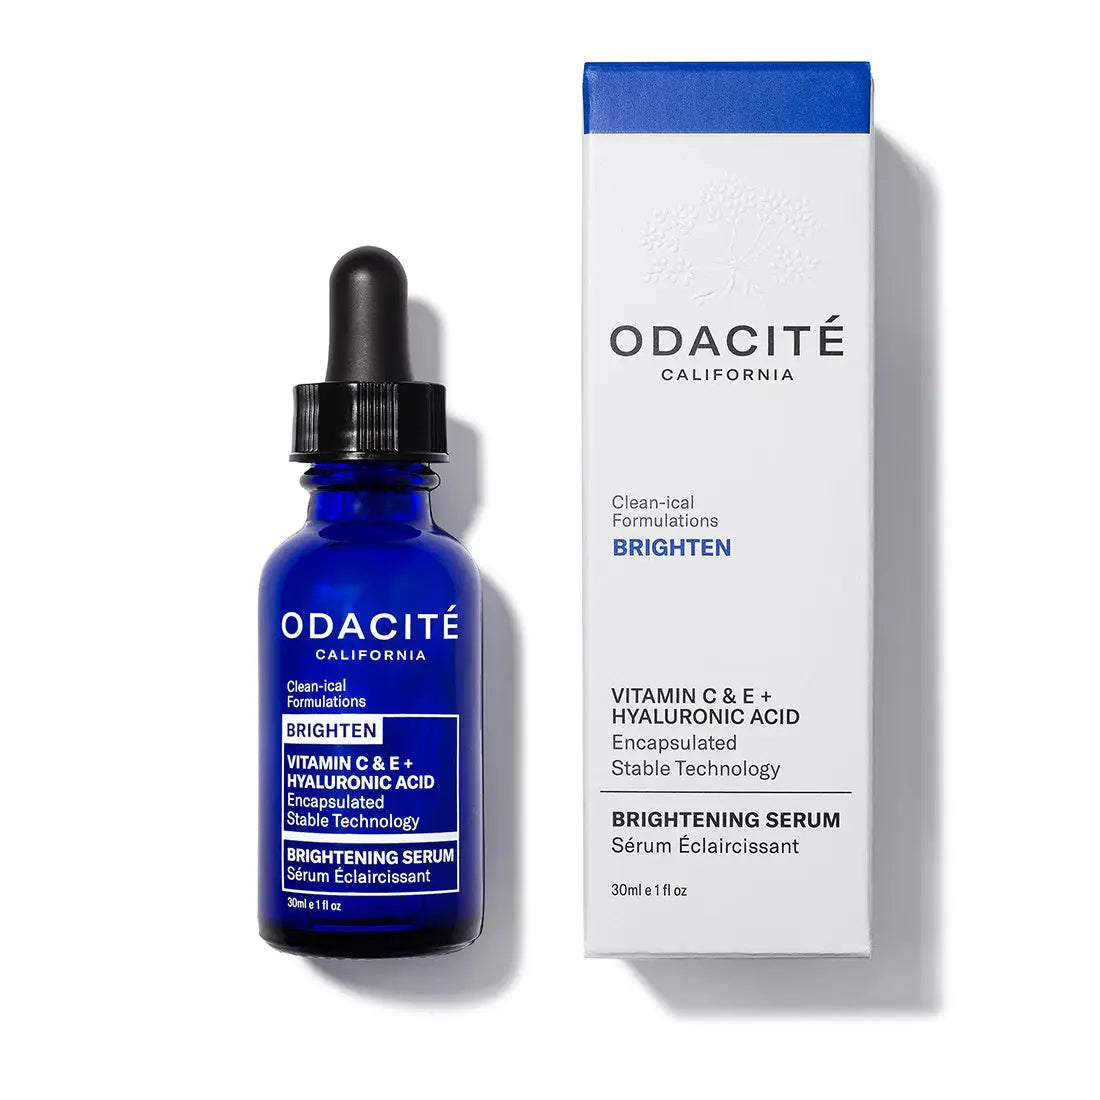 Odacite Brightening Serum Vit C & E + Hyaluronic Acid 30ml